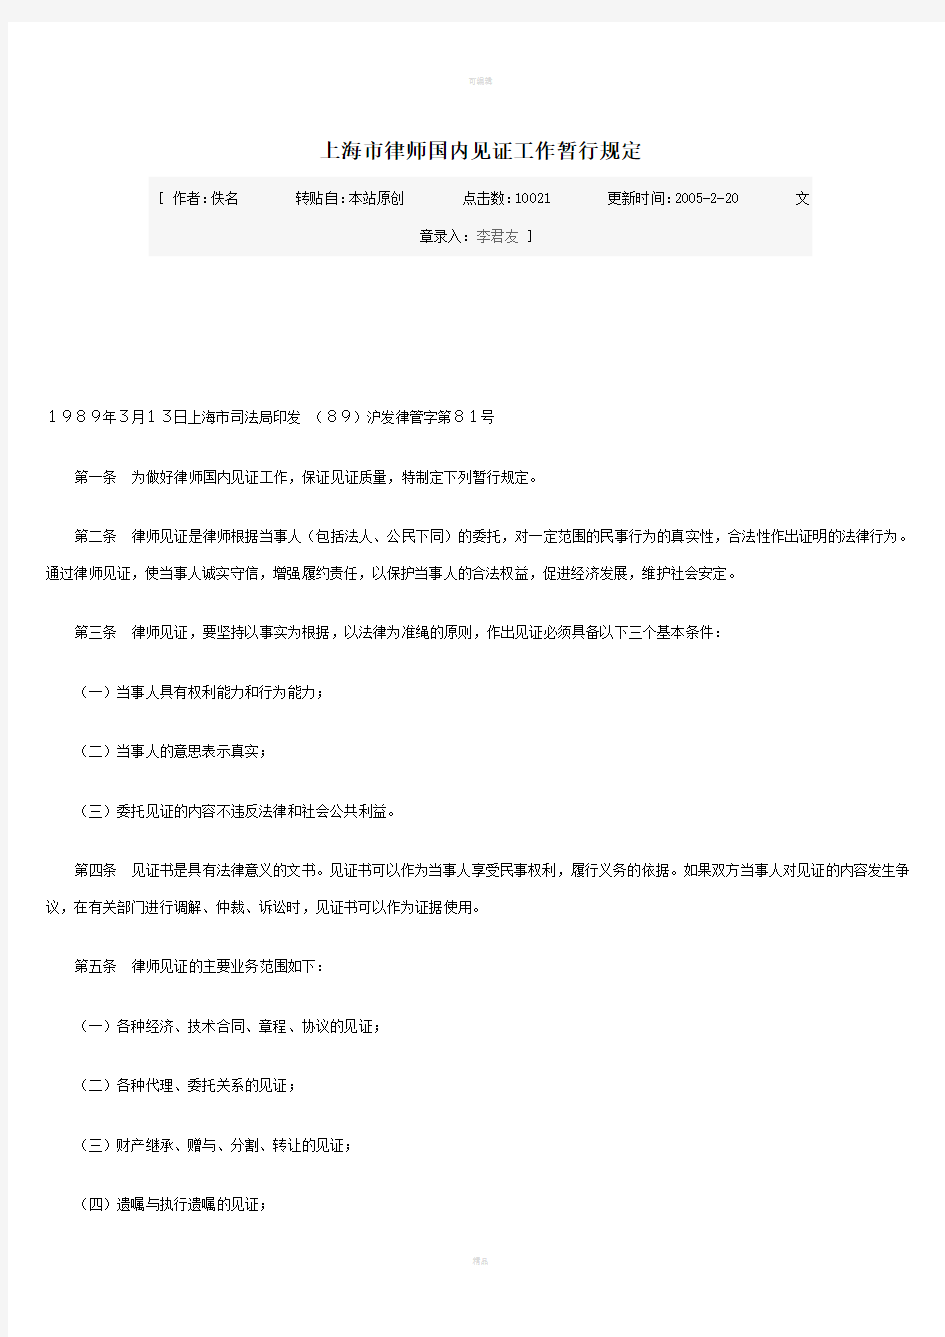 上海市律师国内见证工作暂行规定